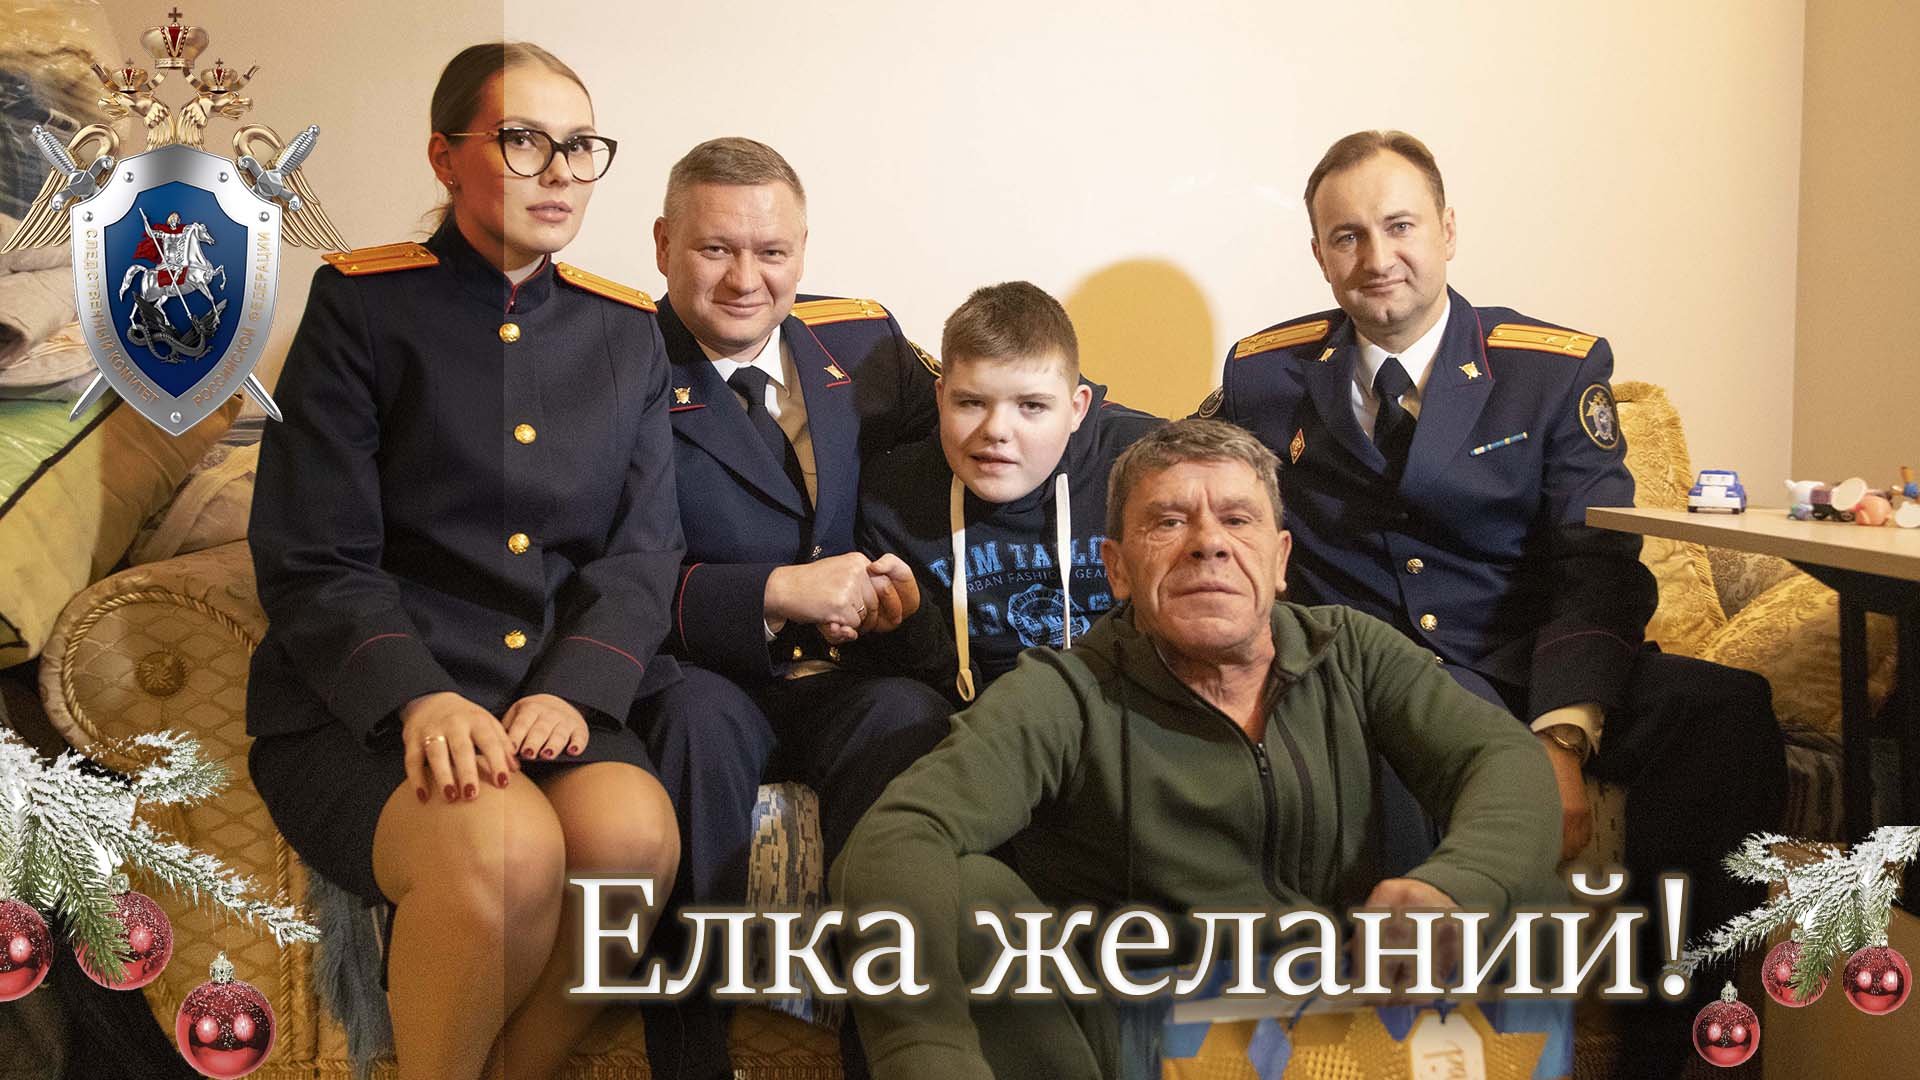 СК России продолжает исполнять мечты детей в рамках благотворительной акции «Елка желаний»